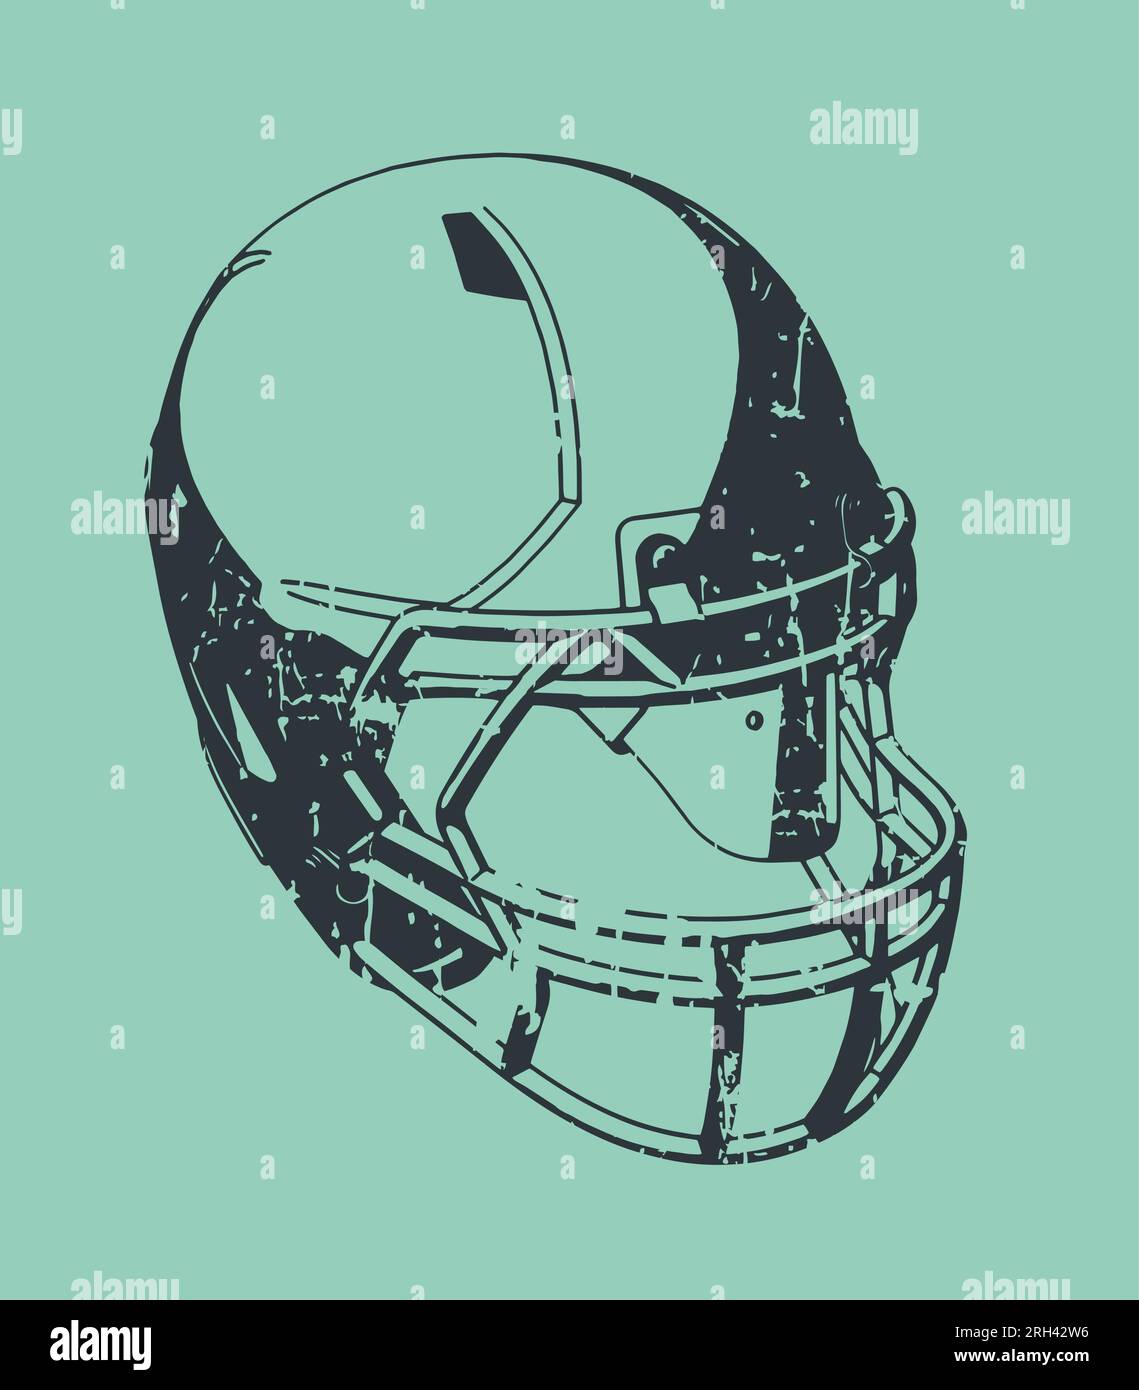 Illustrazione vettoriale stilizzata di un casco da football americano in stile retro poster Illustrazione Vettoriale